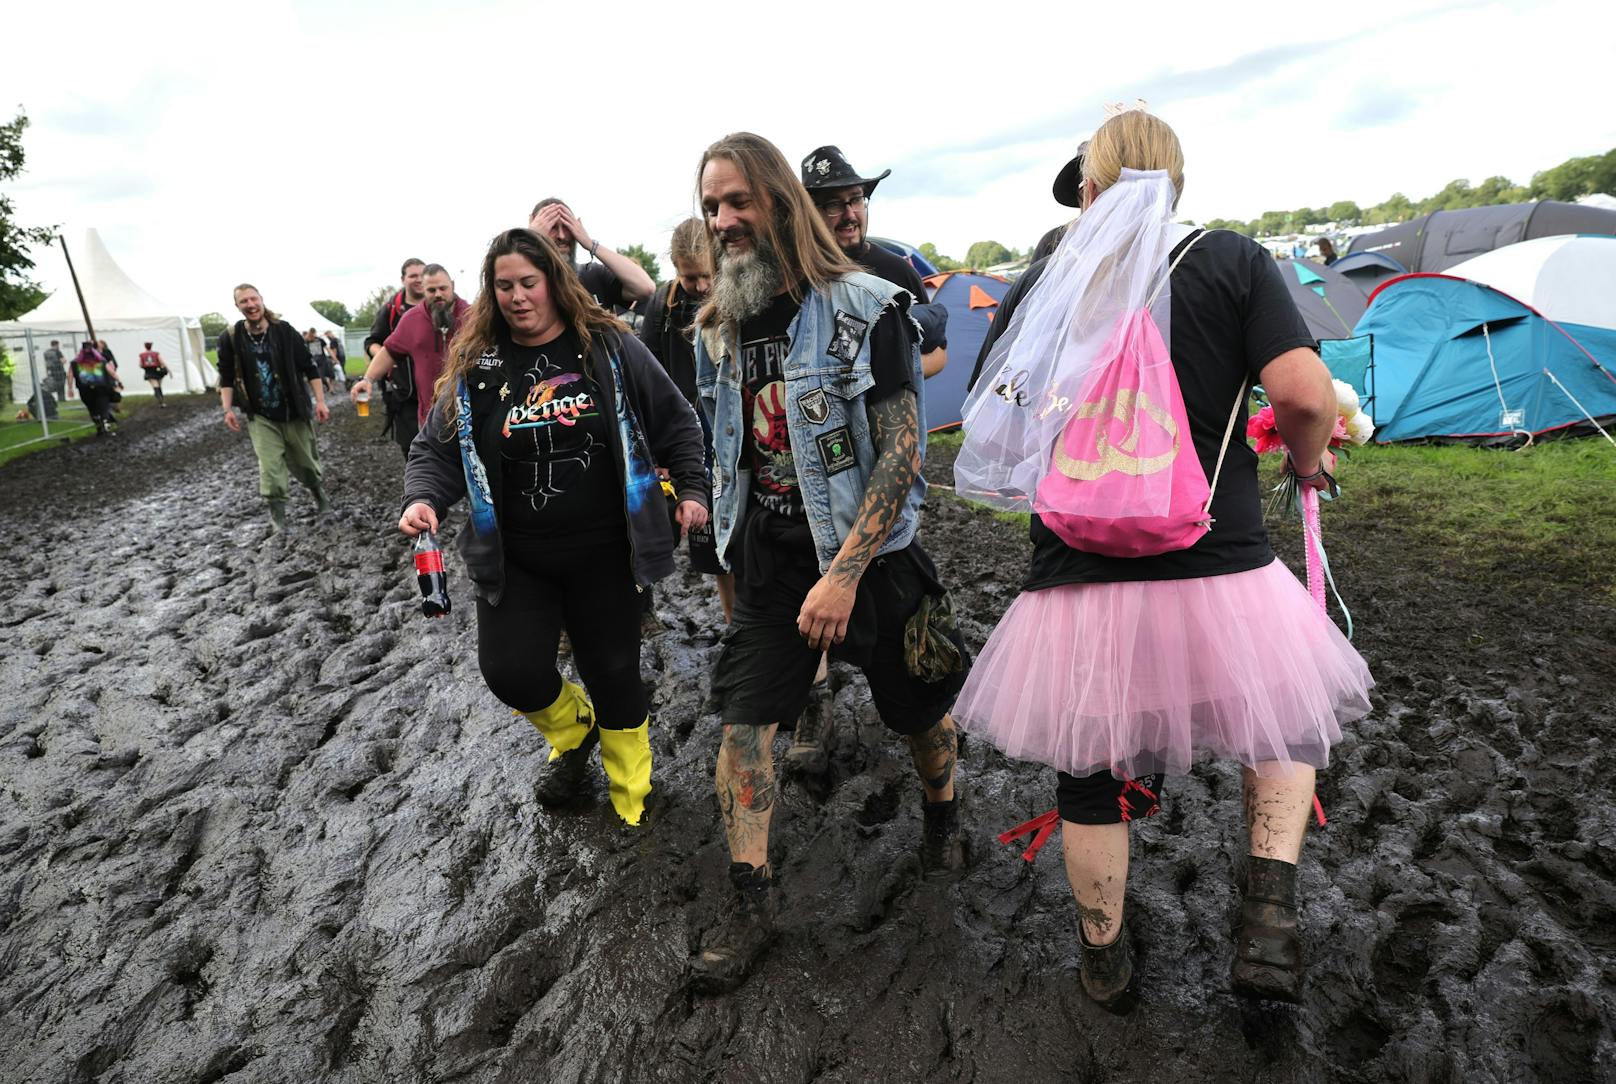 Die Veranstalter des Metal-Festivals Wacken haben schon am Montag zwischenzeitlich die Anreise der Fans gestoppt. Die Campingplätze sind überflutet.